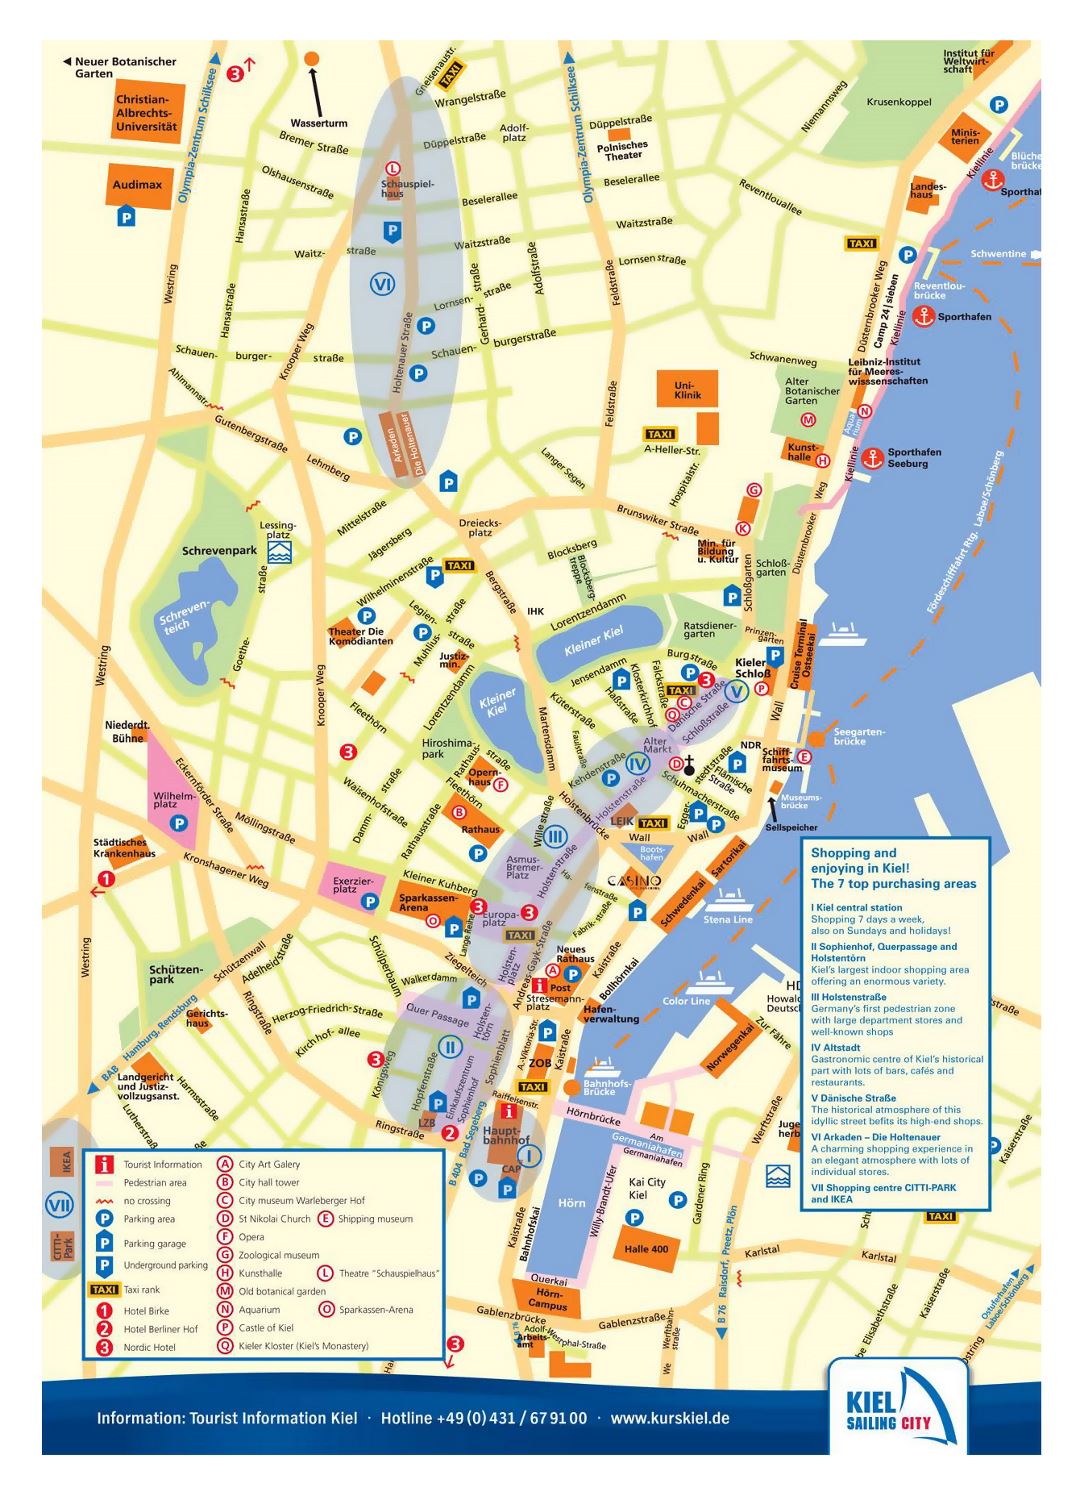 Большая детальная туристическая карта центральной части города Киль